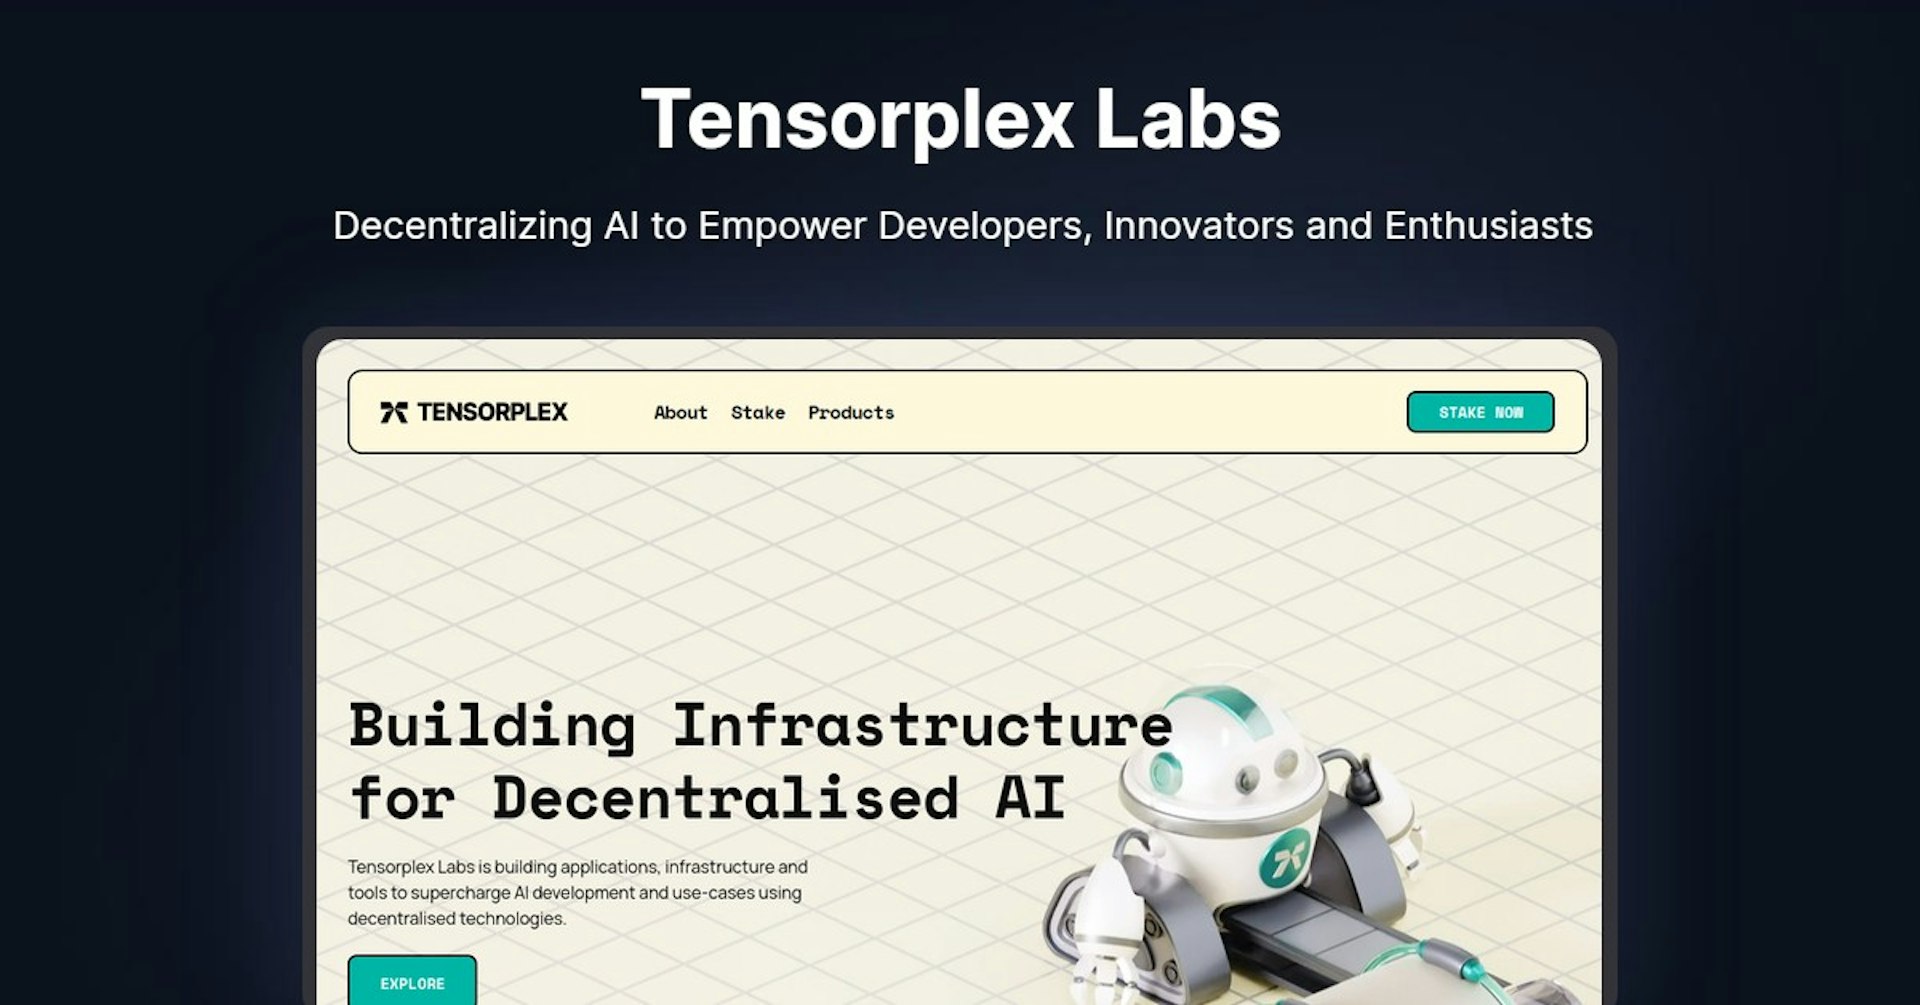 Tensorplex Labs